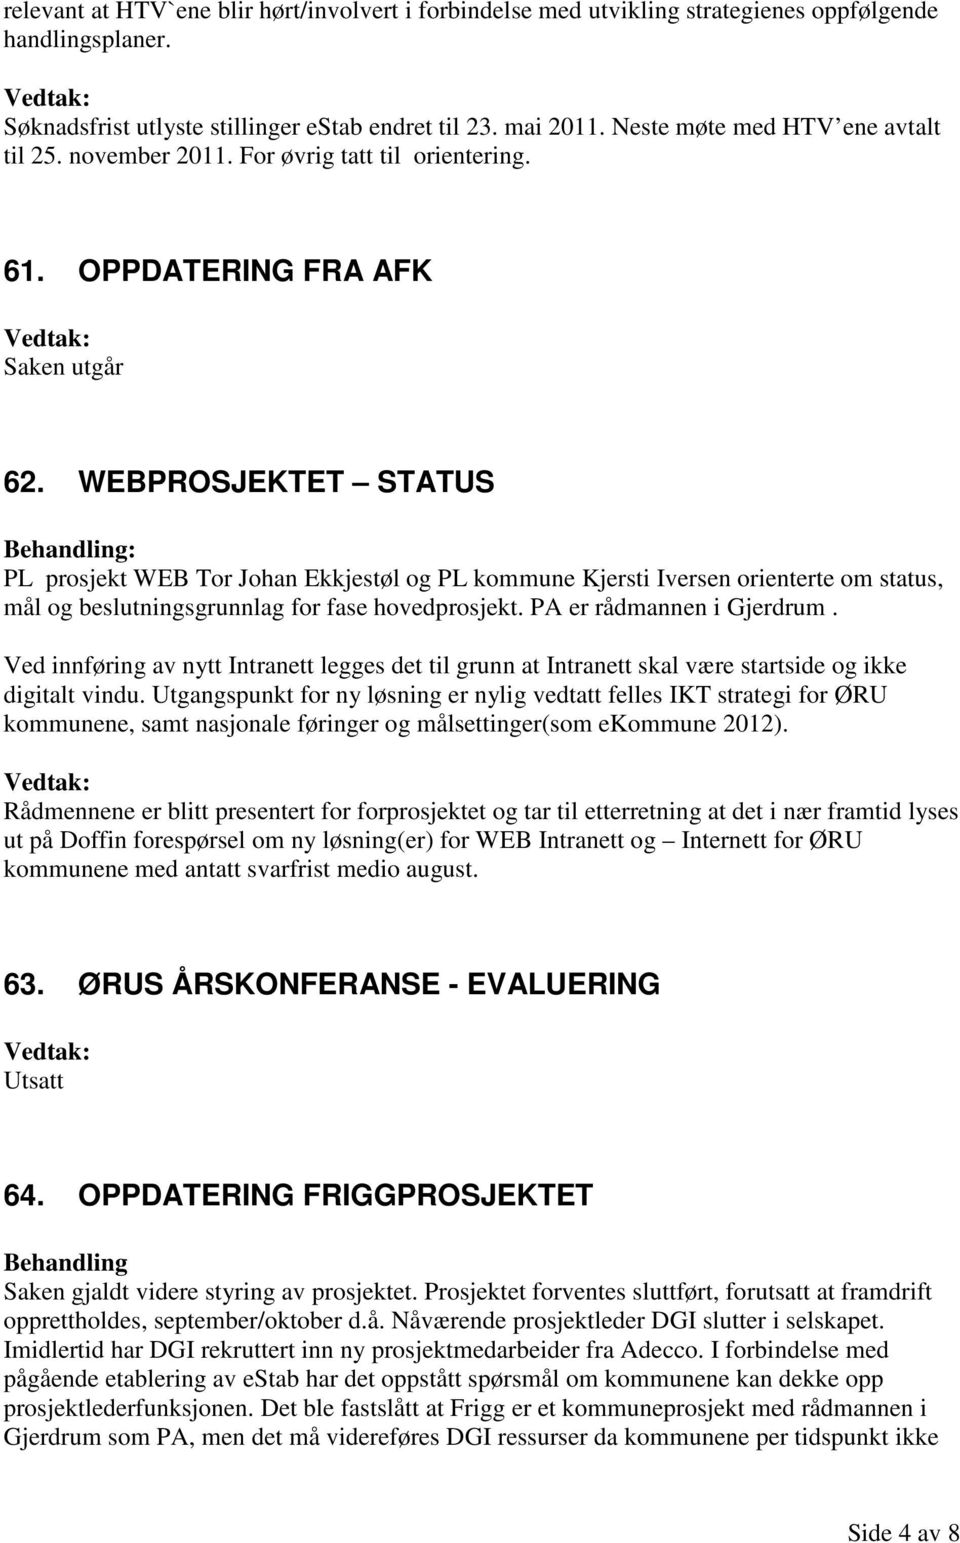 WEBPROSJEKTET STATUS PL prosjekt WEB Tor Johan Ekkjestøl og PL kommune Kjersti Iversen orienterte om status, mål og beslutningsgrunnlag for fase hovedprosjekt. PA er rådmannen i Gjerdrum.